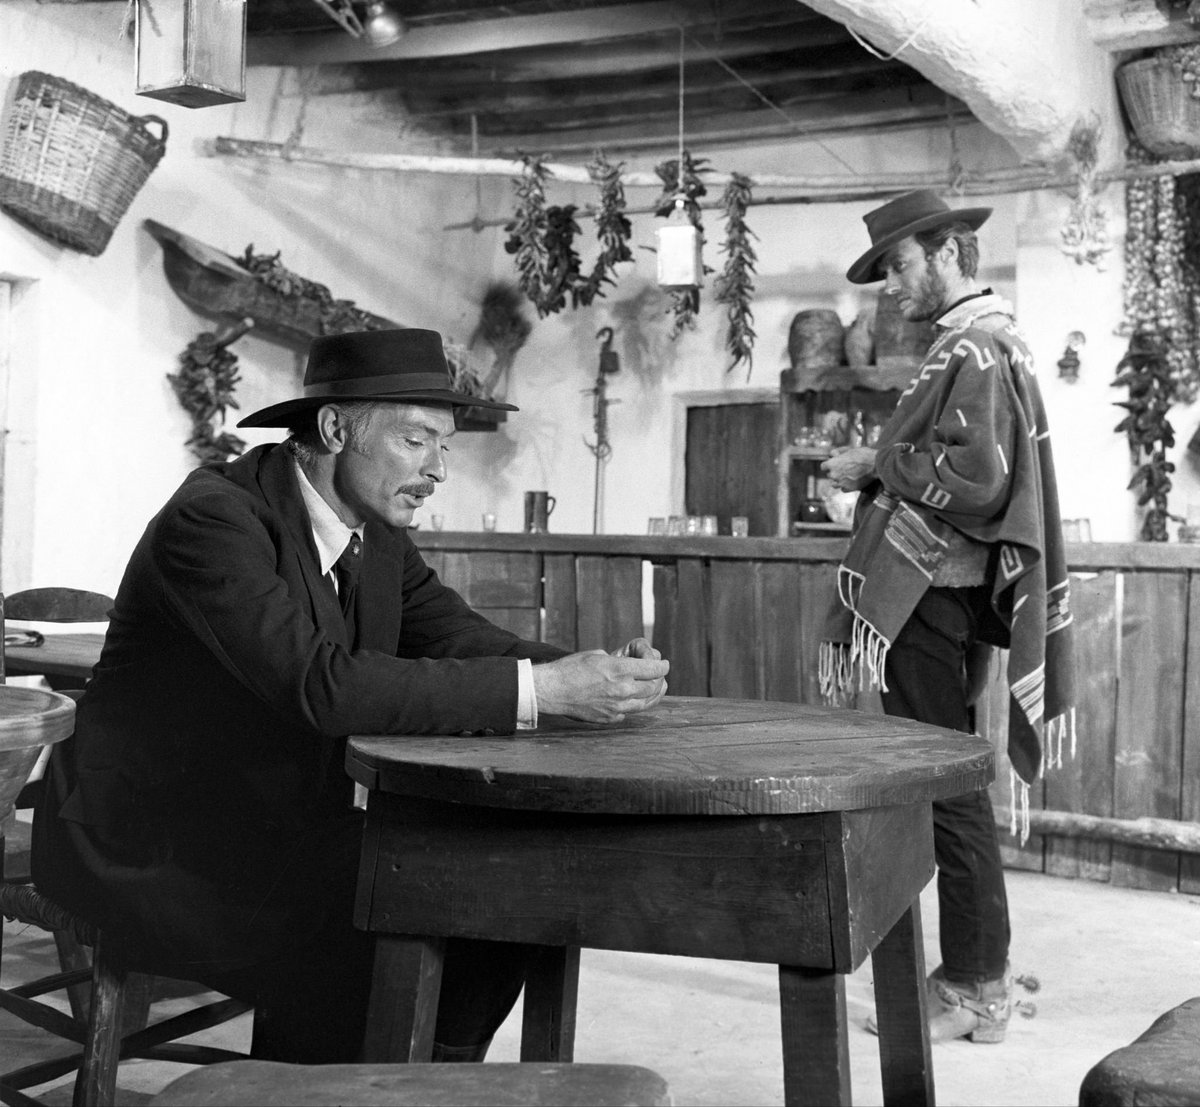 #9gennaio | #LeeVanCleef e Clint Eastwood sul set di 'Per qualche dollaro in più' (Sergio Leone, 1965).

Non ha niente di straordinario, ma questo scatto mi piace moltissimo. 🥹🫡